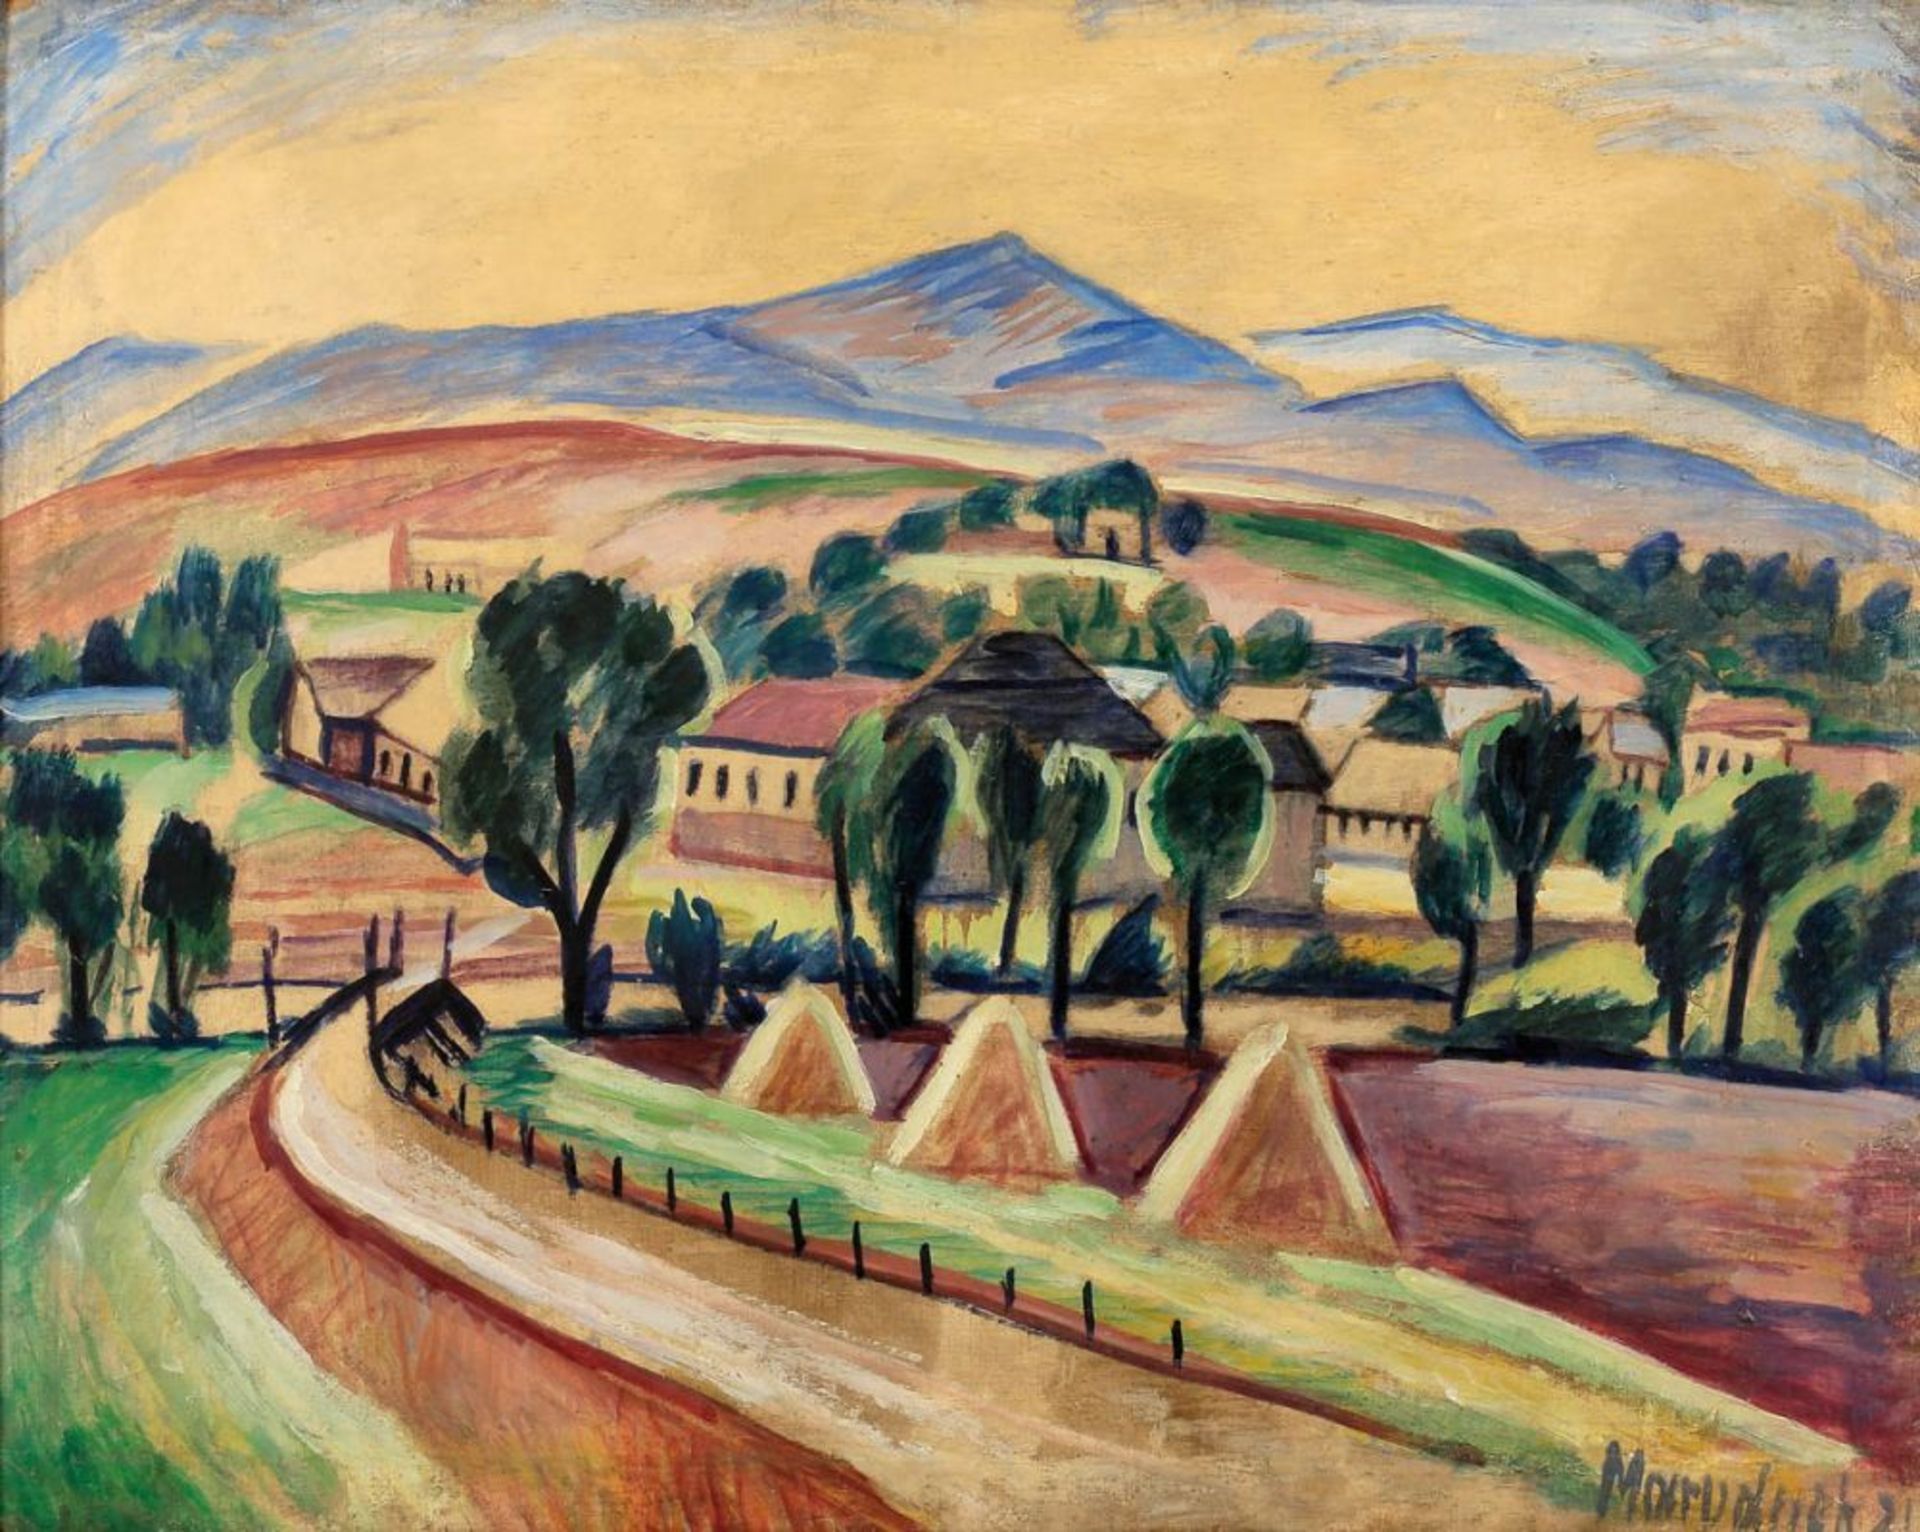 Otakar Marvanek 1884 - 1921 - Hügelige Landschaft mit Häusern - Öl/Lwd. 59 x 74,5 cm. Sign. und dat.